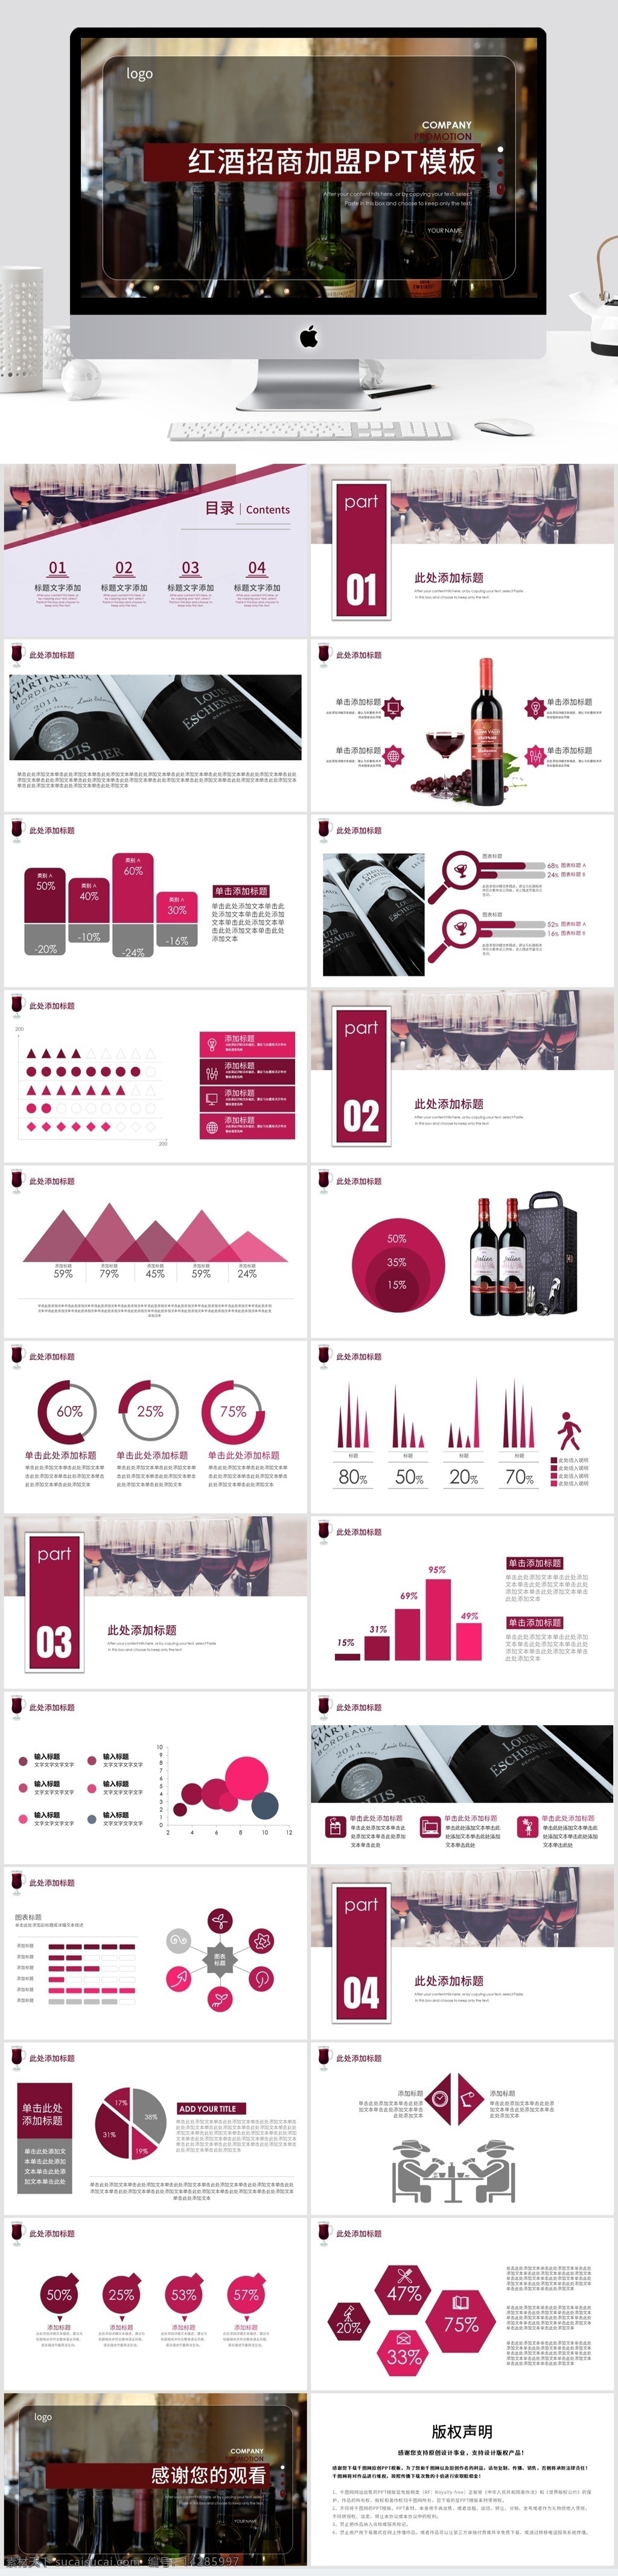 红酒 品牌 招商 加盟 宣传 模板 葡萄酒 品牌宣传 商业计划书 品牌宣讲 传播 知名度